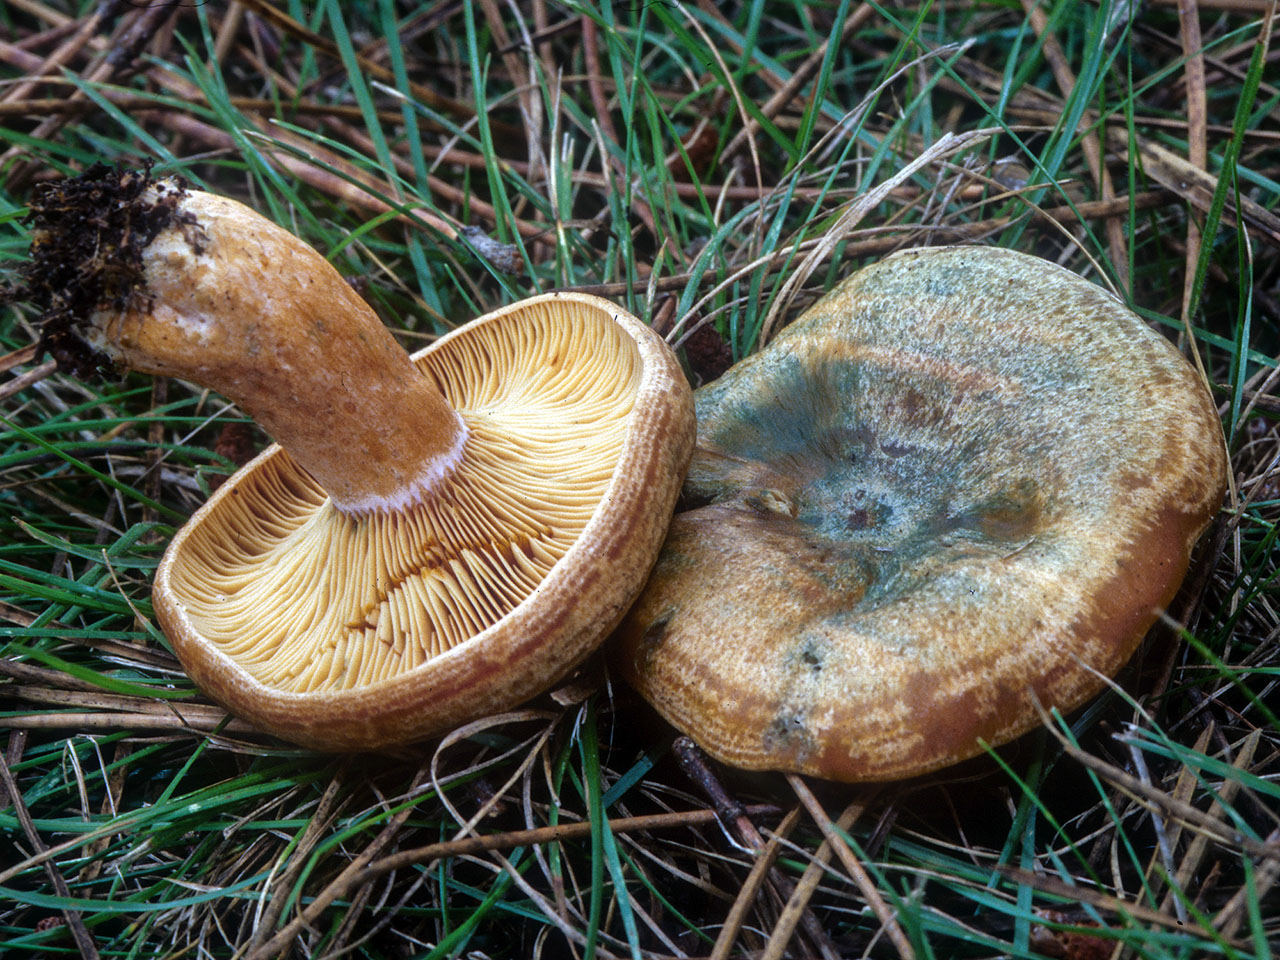 рыжики грибы фото съедобные